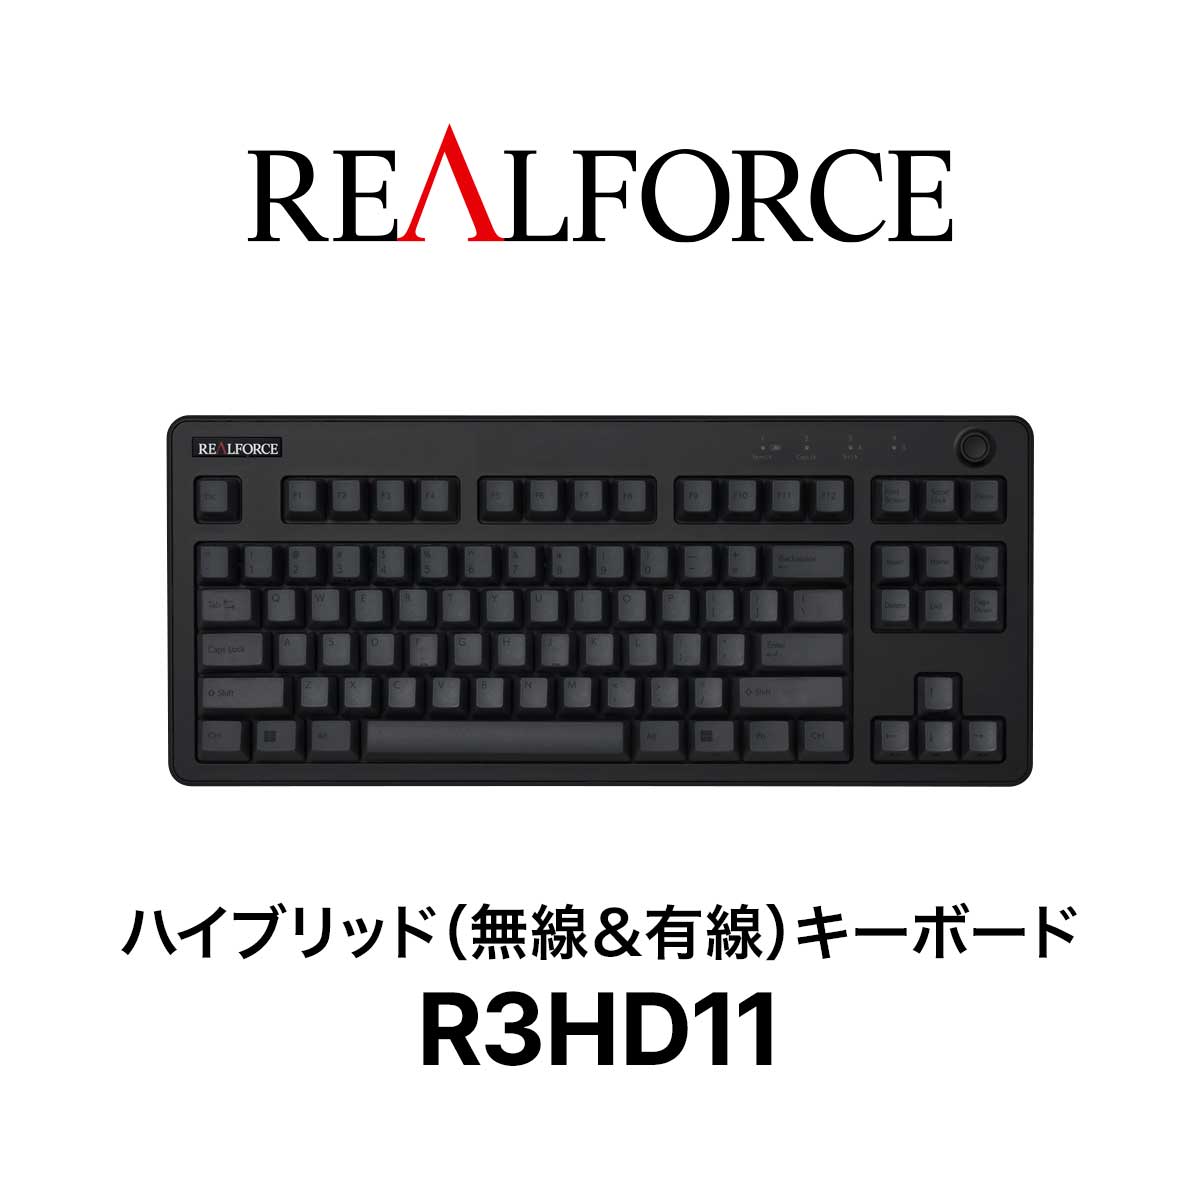 超大特価 REALFORCE   R3   キーボード   R3HD11   ワイヤレス   Bluetooth   USB   東プレ   ハイブリッドモデル   テンキーレス   静音   ブラック＆ダークグレー   英語配列